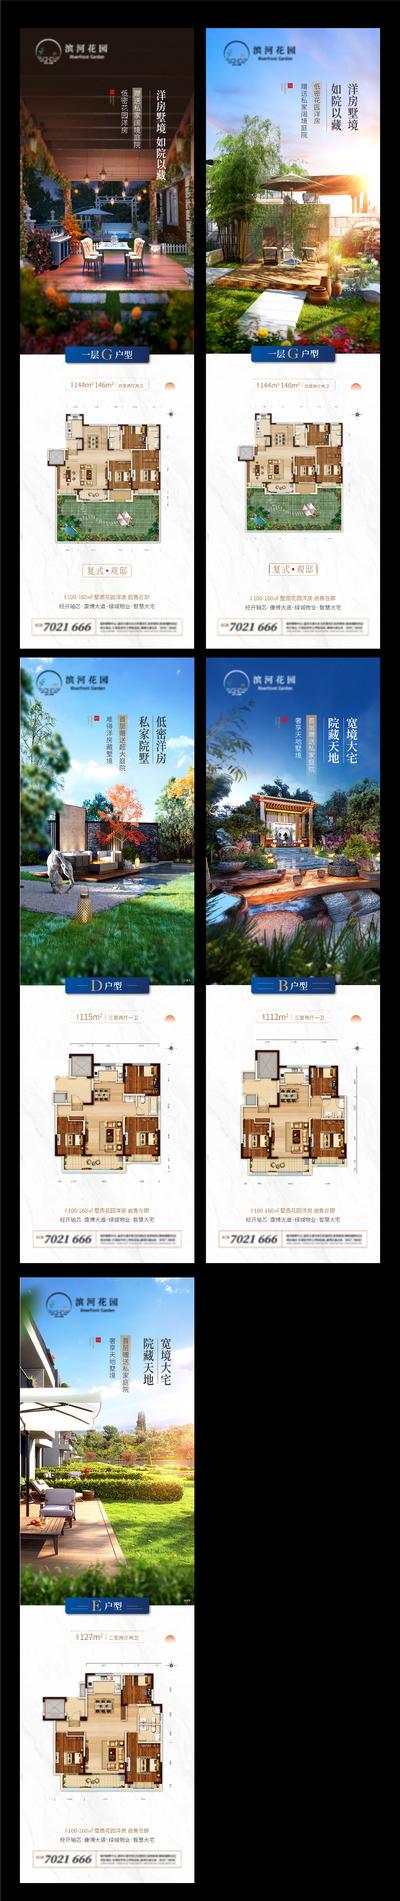 南门网 海报 长图 房地产 户型 价值点 卖点 客厅 庭院 露台 园林 生态 系列